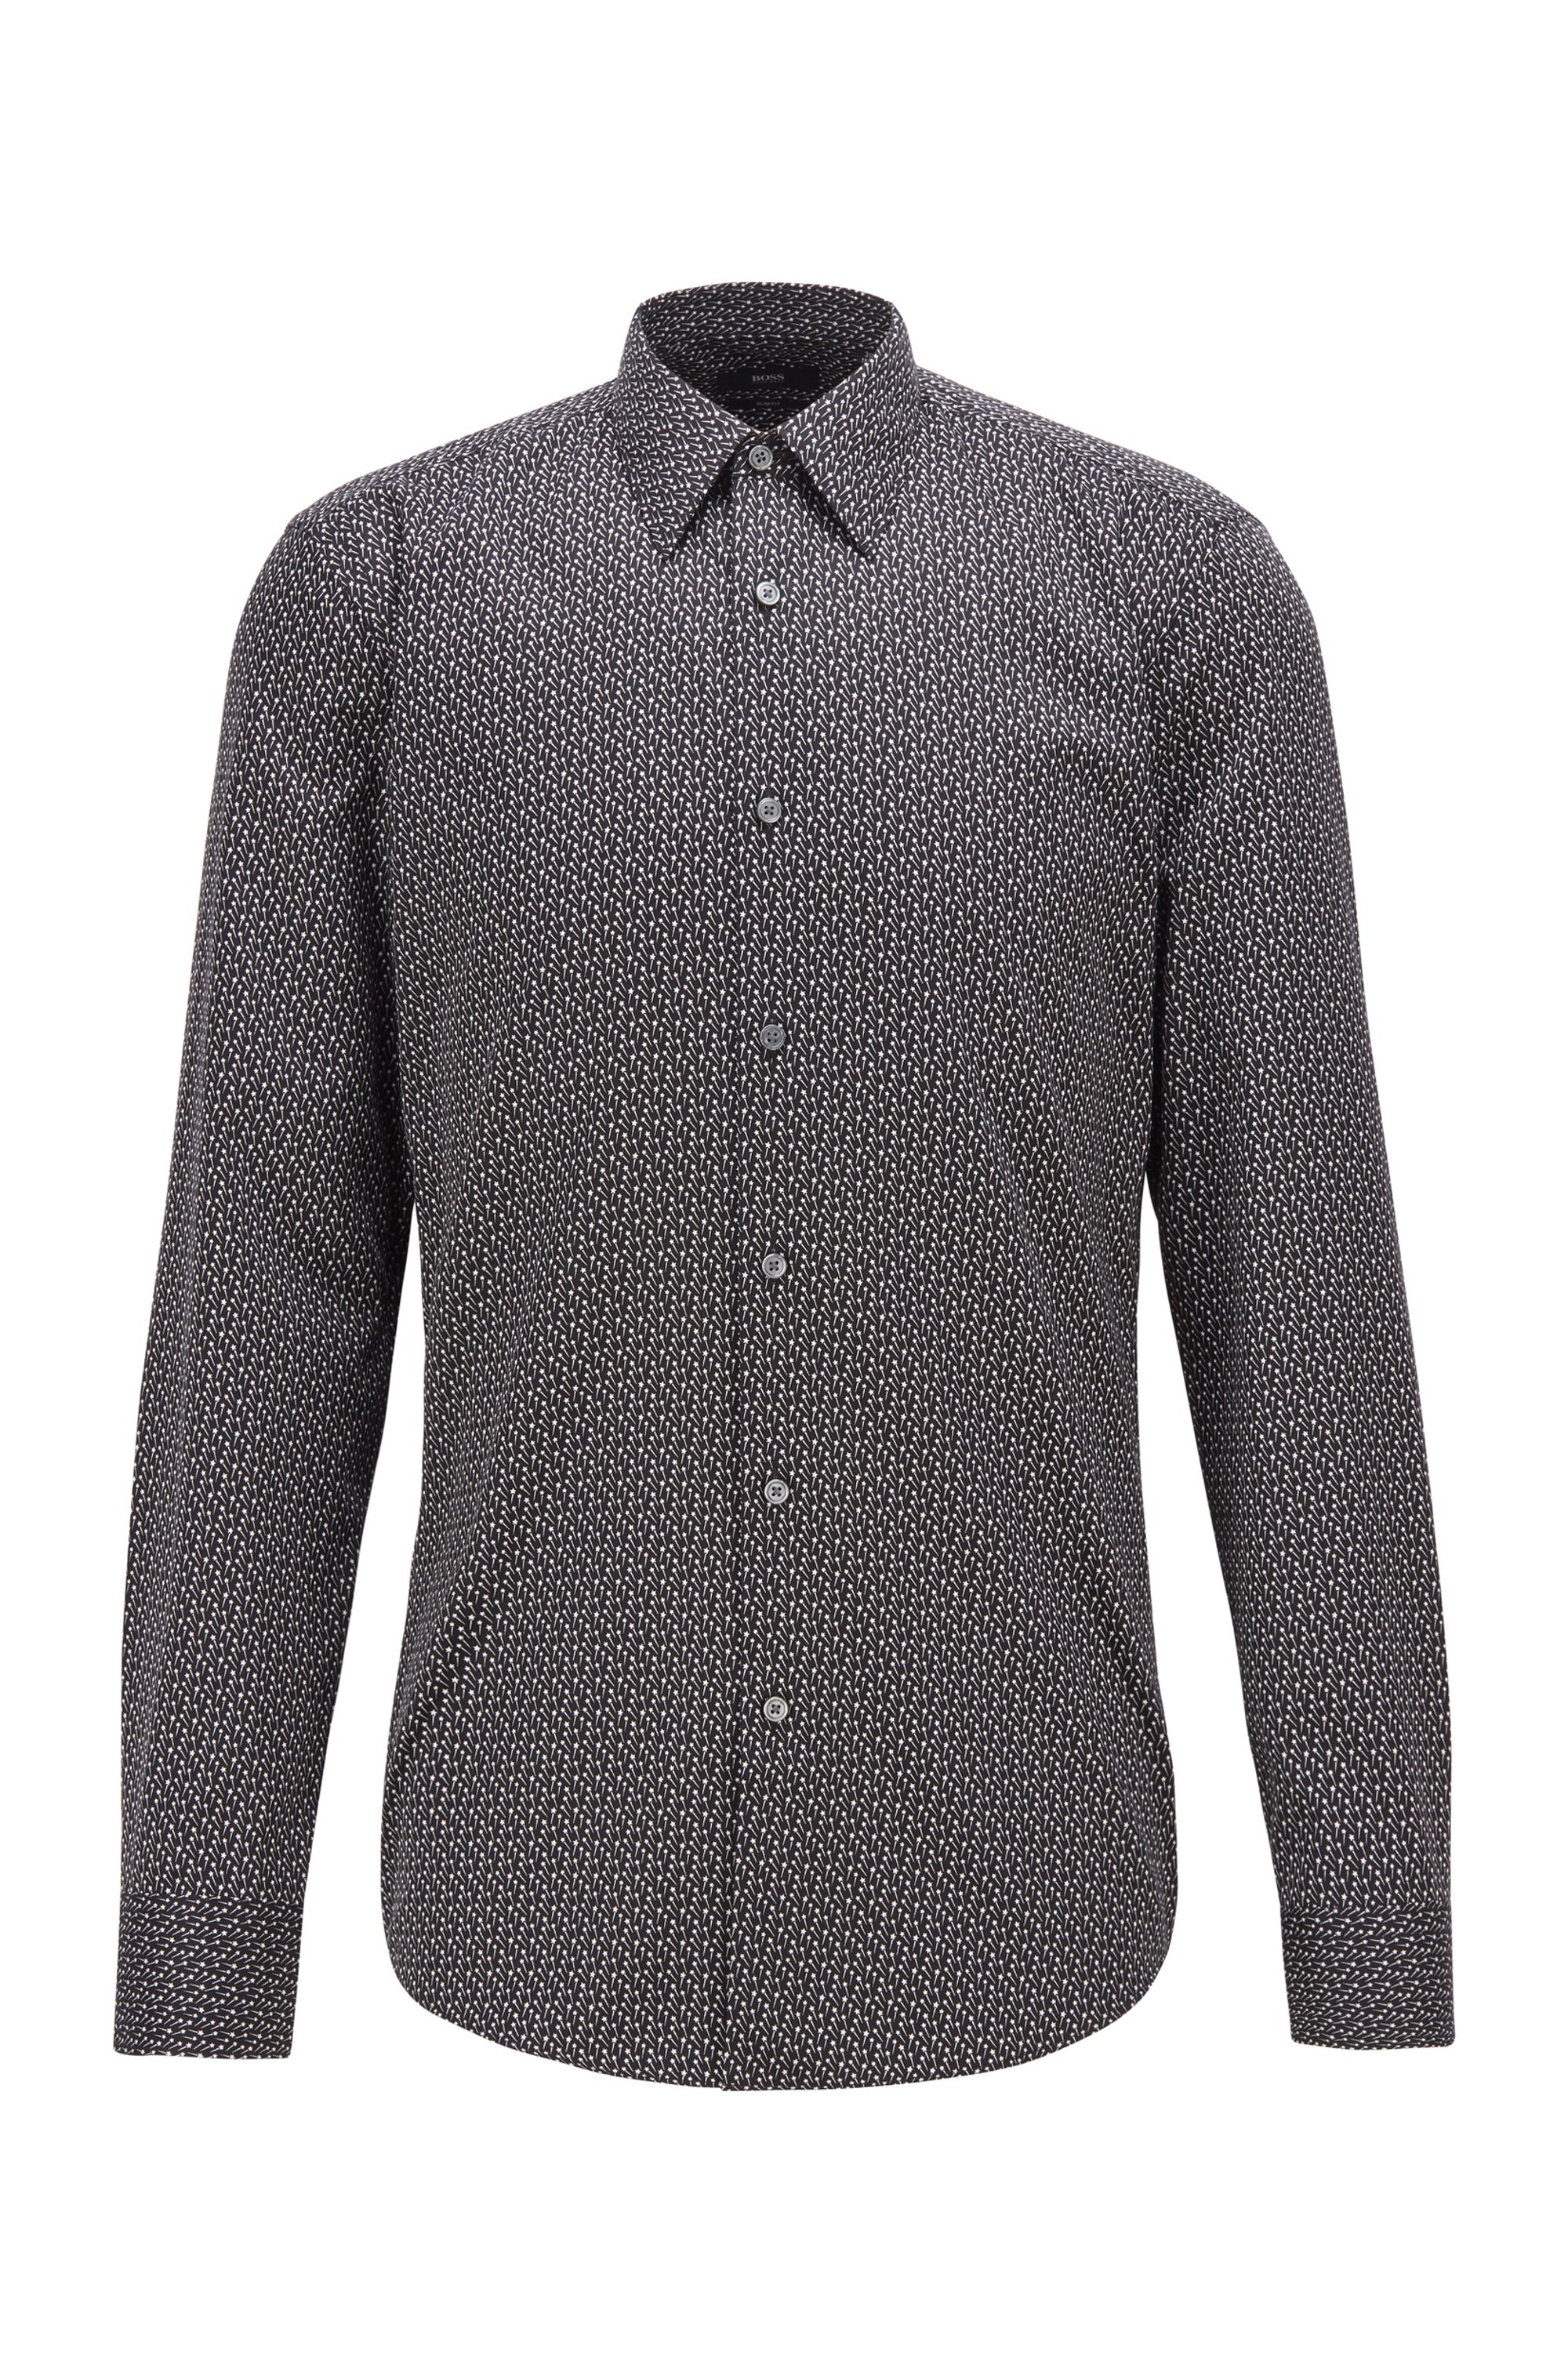 Gemustertes Slim-Fit Hemd aus italienischem Baumwoll-Satin, Schwarz